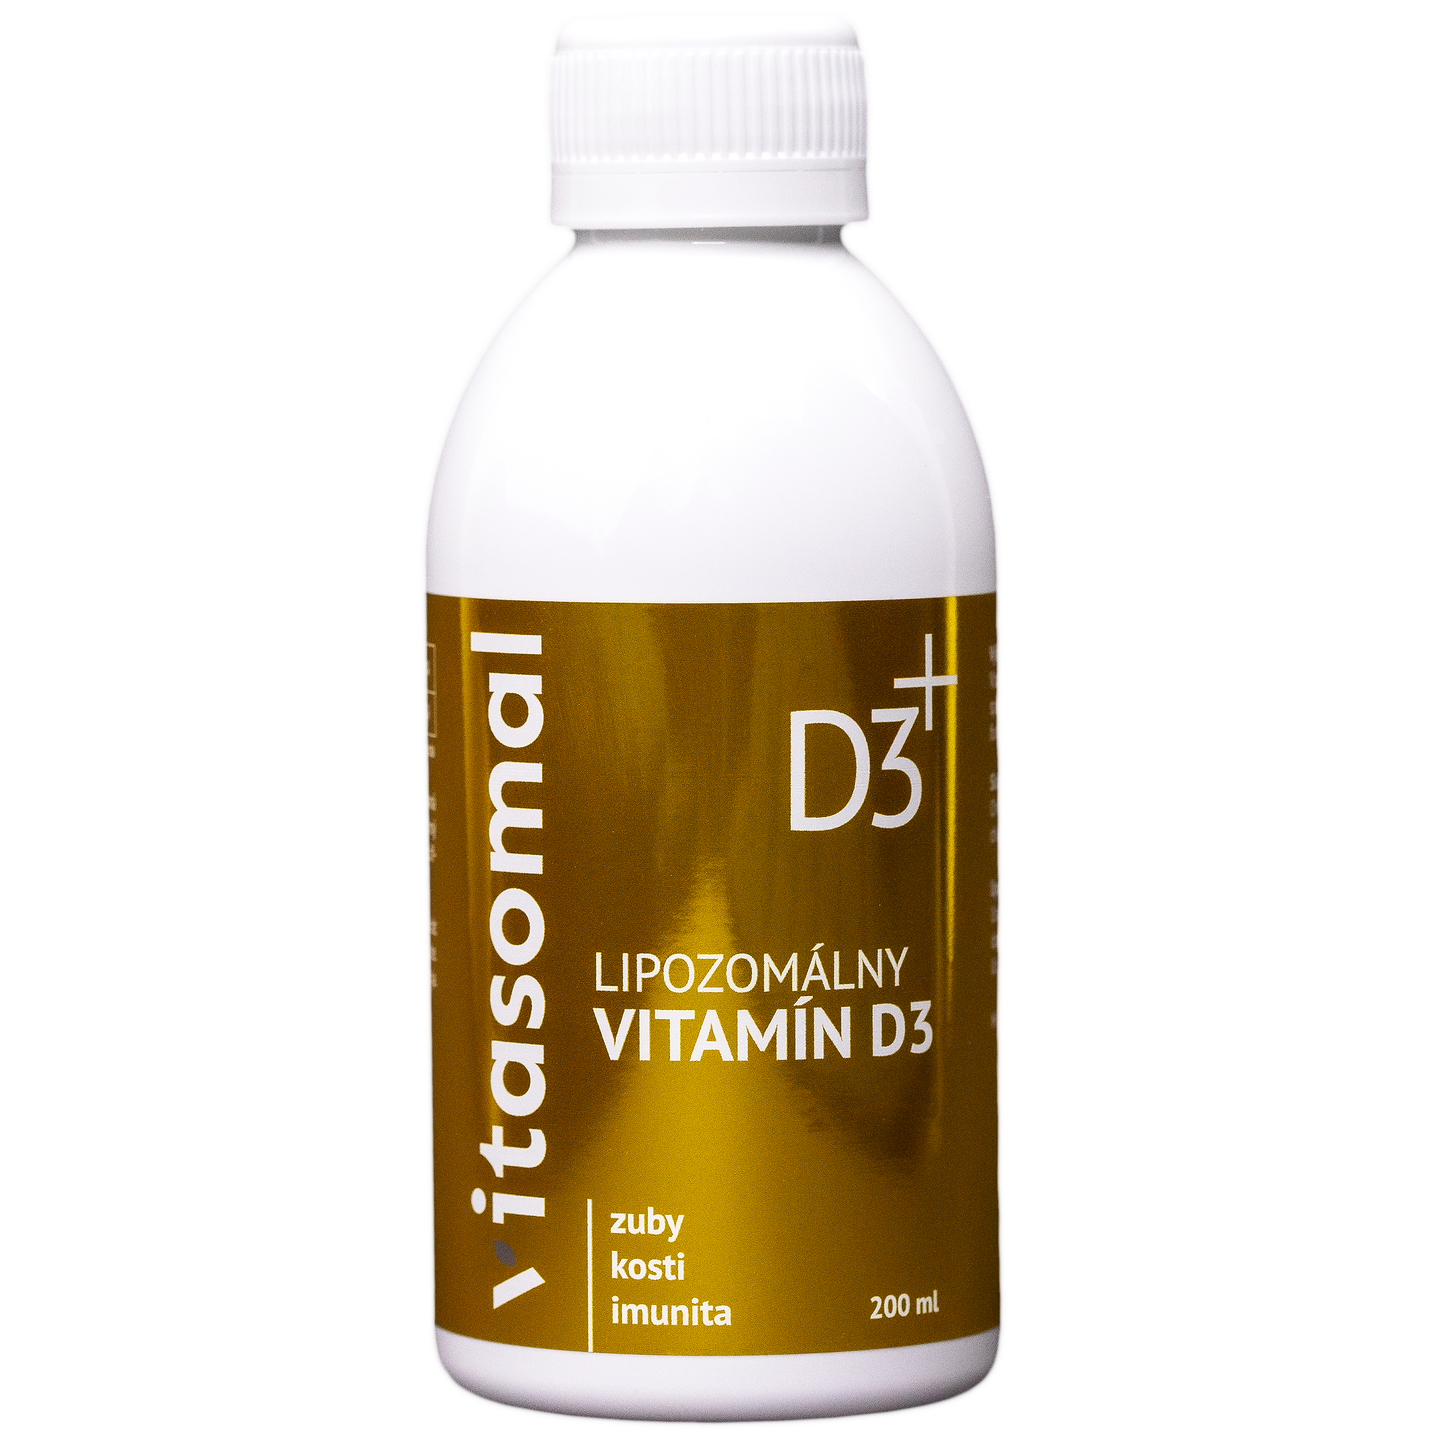 Lipozomálny vitamín D3 (bez konzervantov)